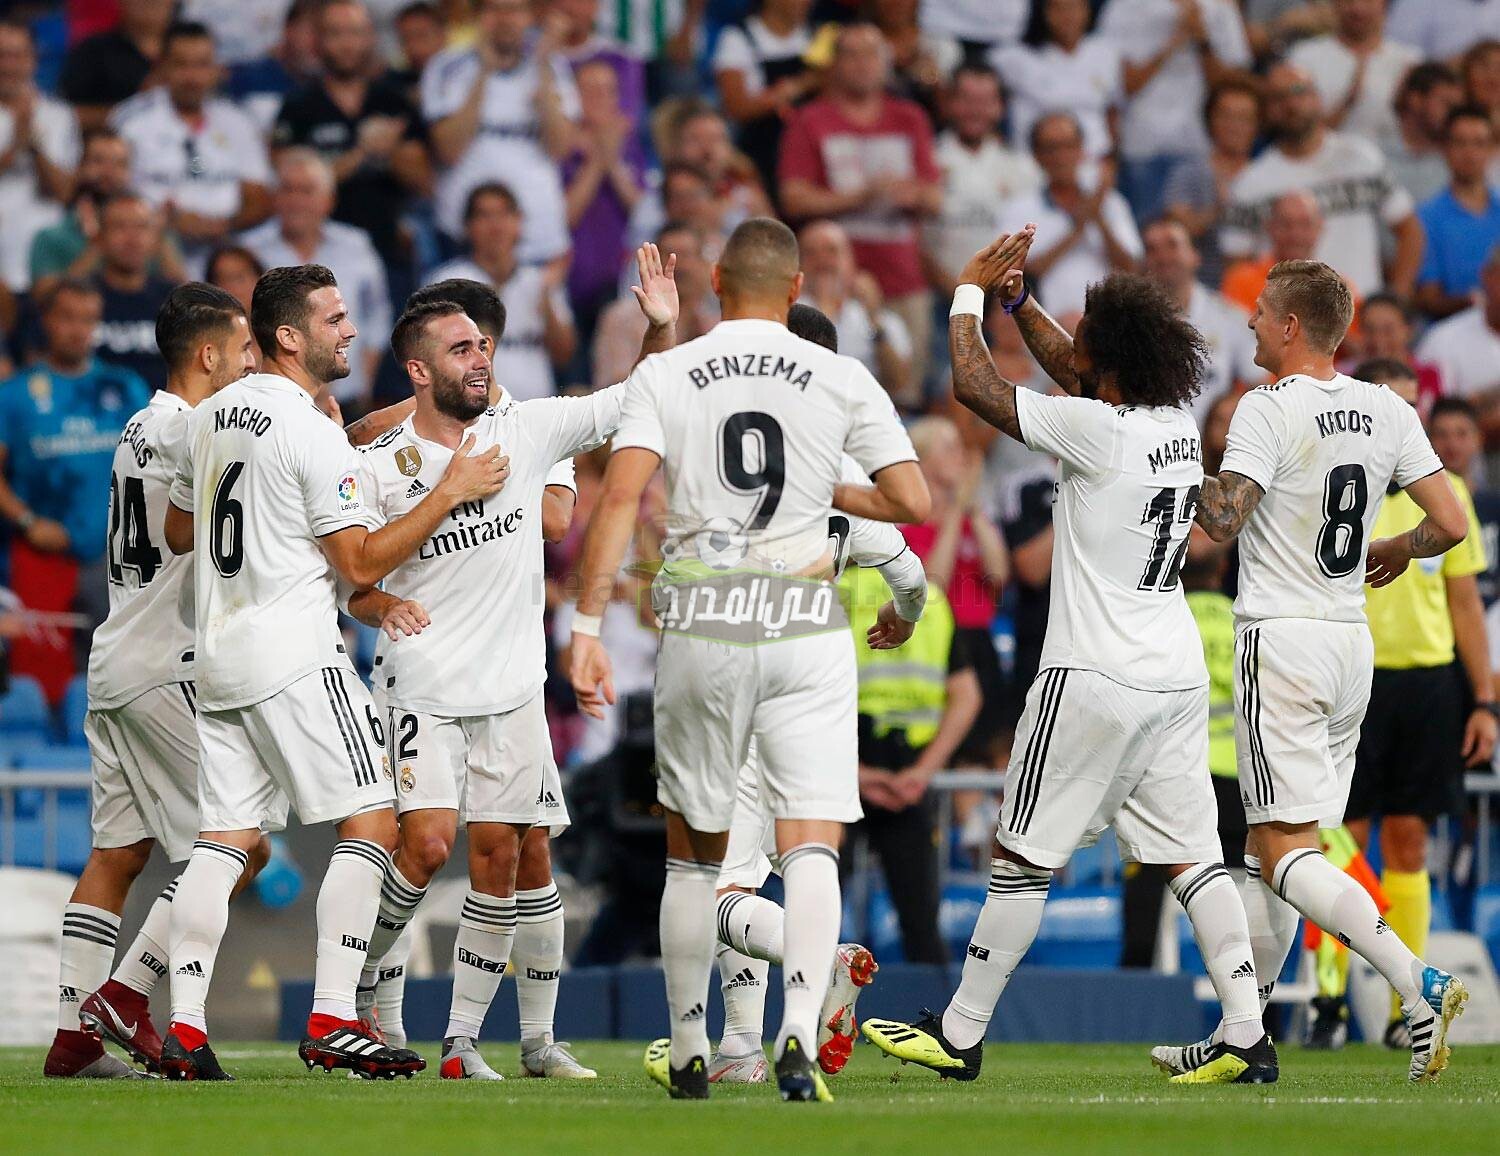 نتيجة مباراة ريال مدريد وبلد الوليد real madrid vs Valladolid في الدوري الاسباني